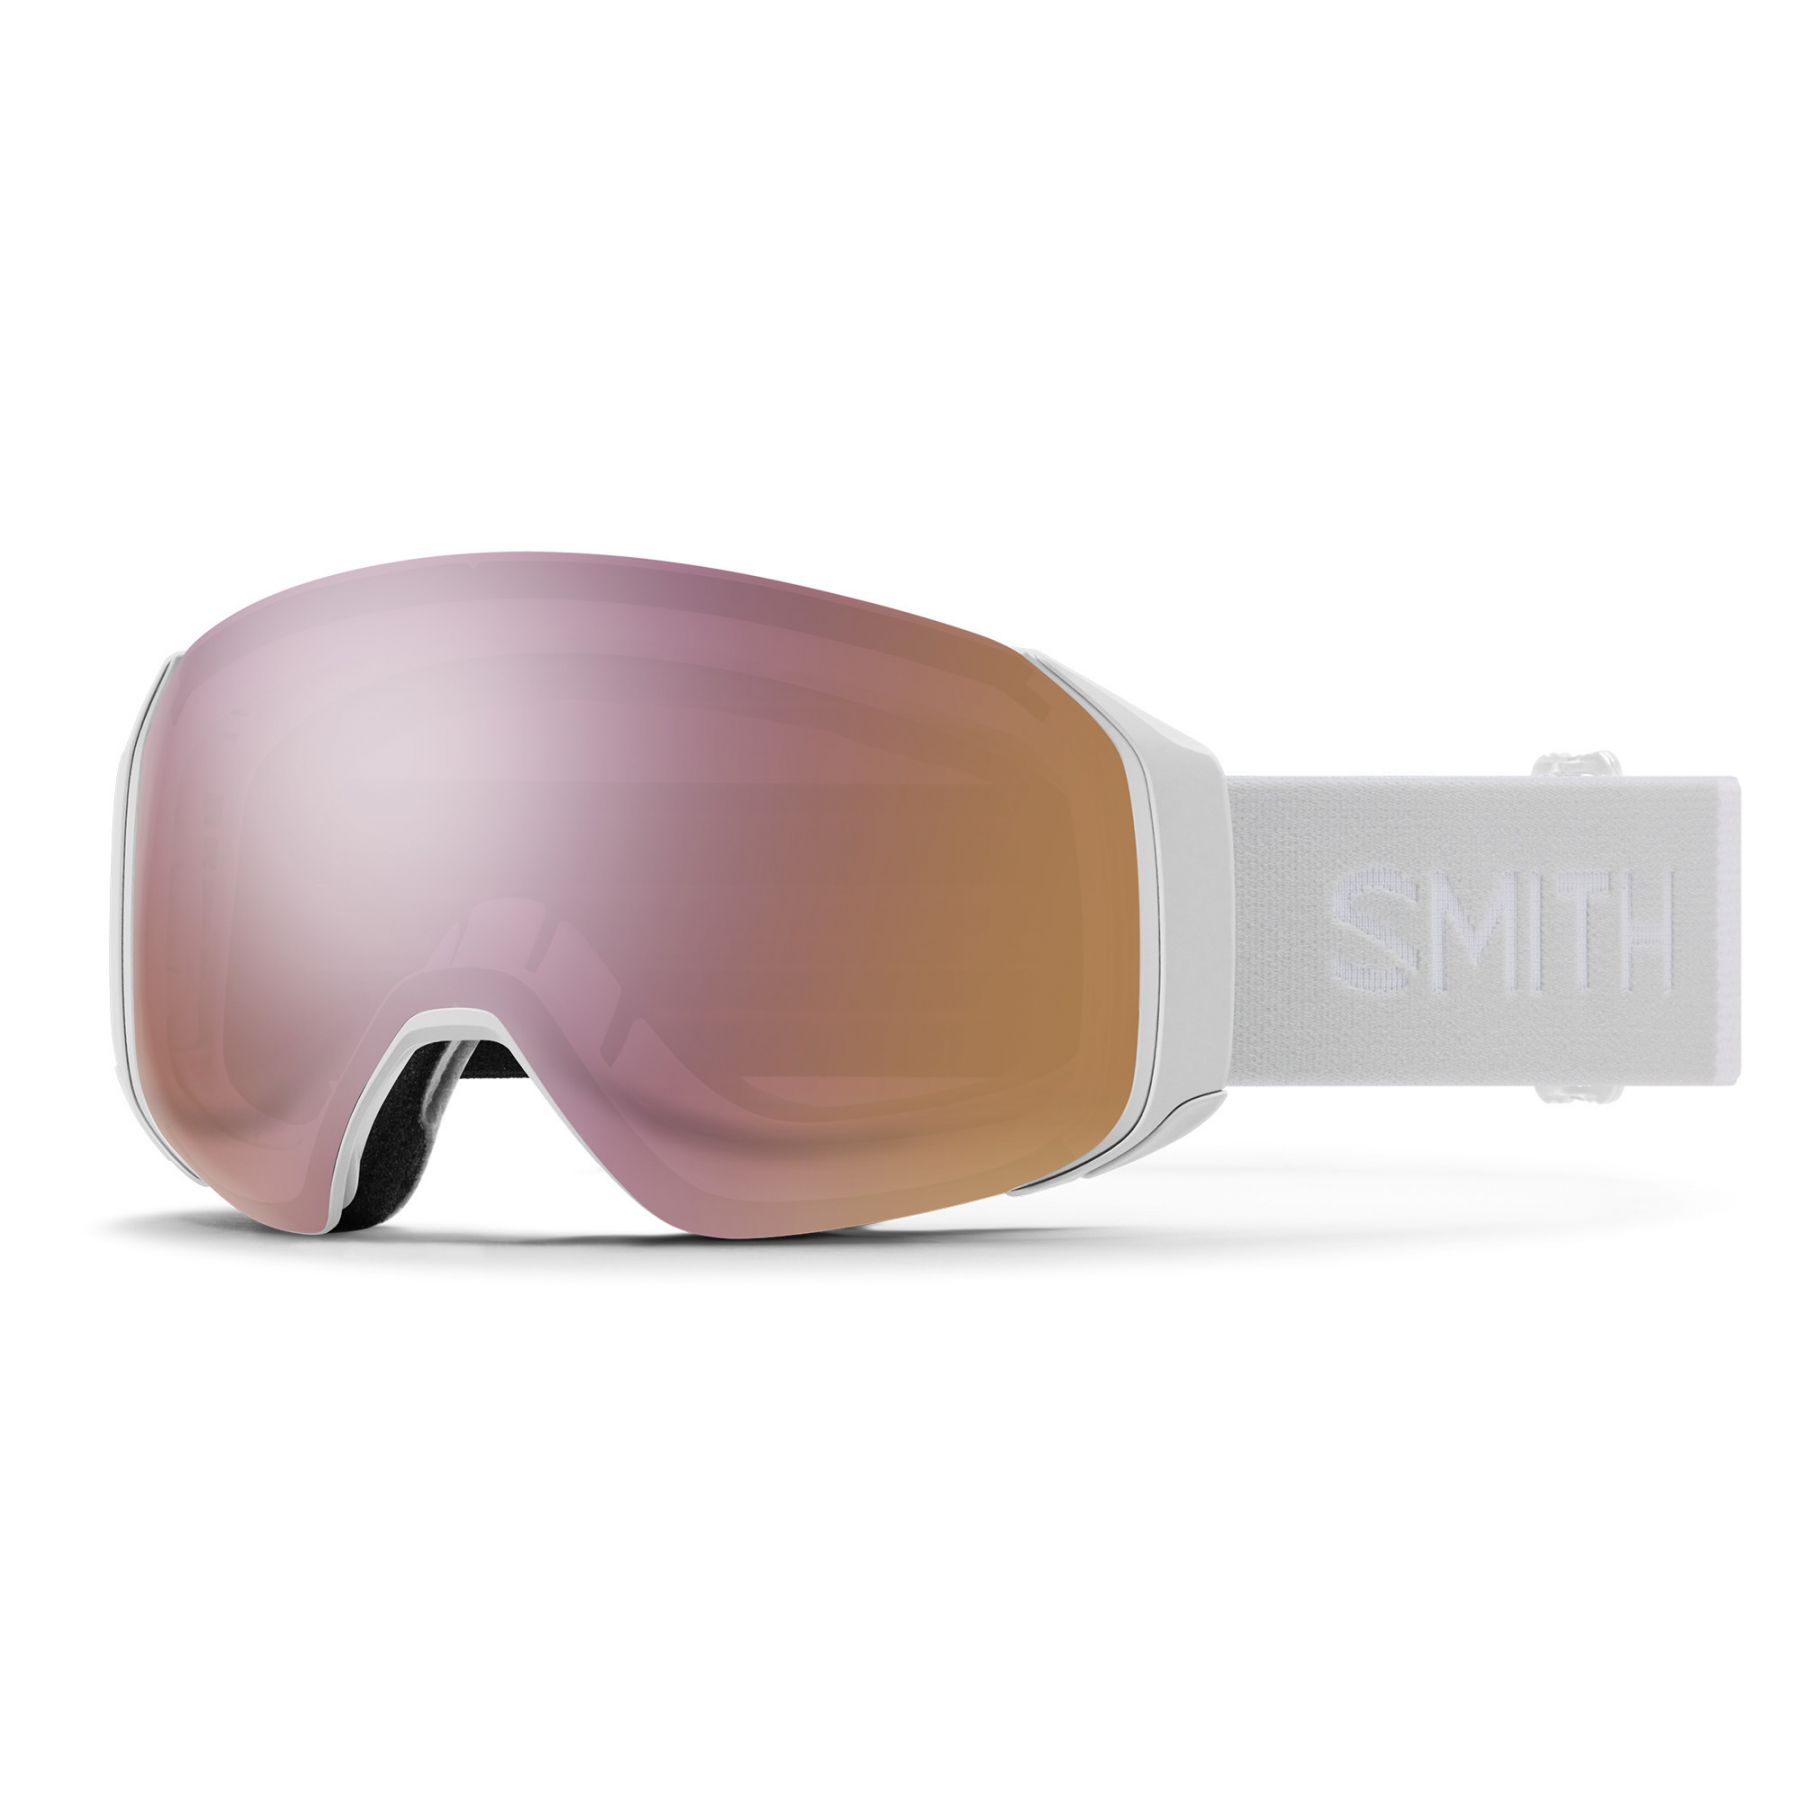 Billede af Smith 4D MAG S, skibrille, hvid